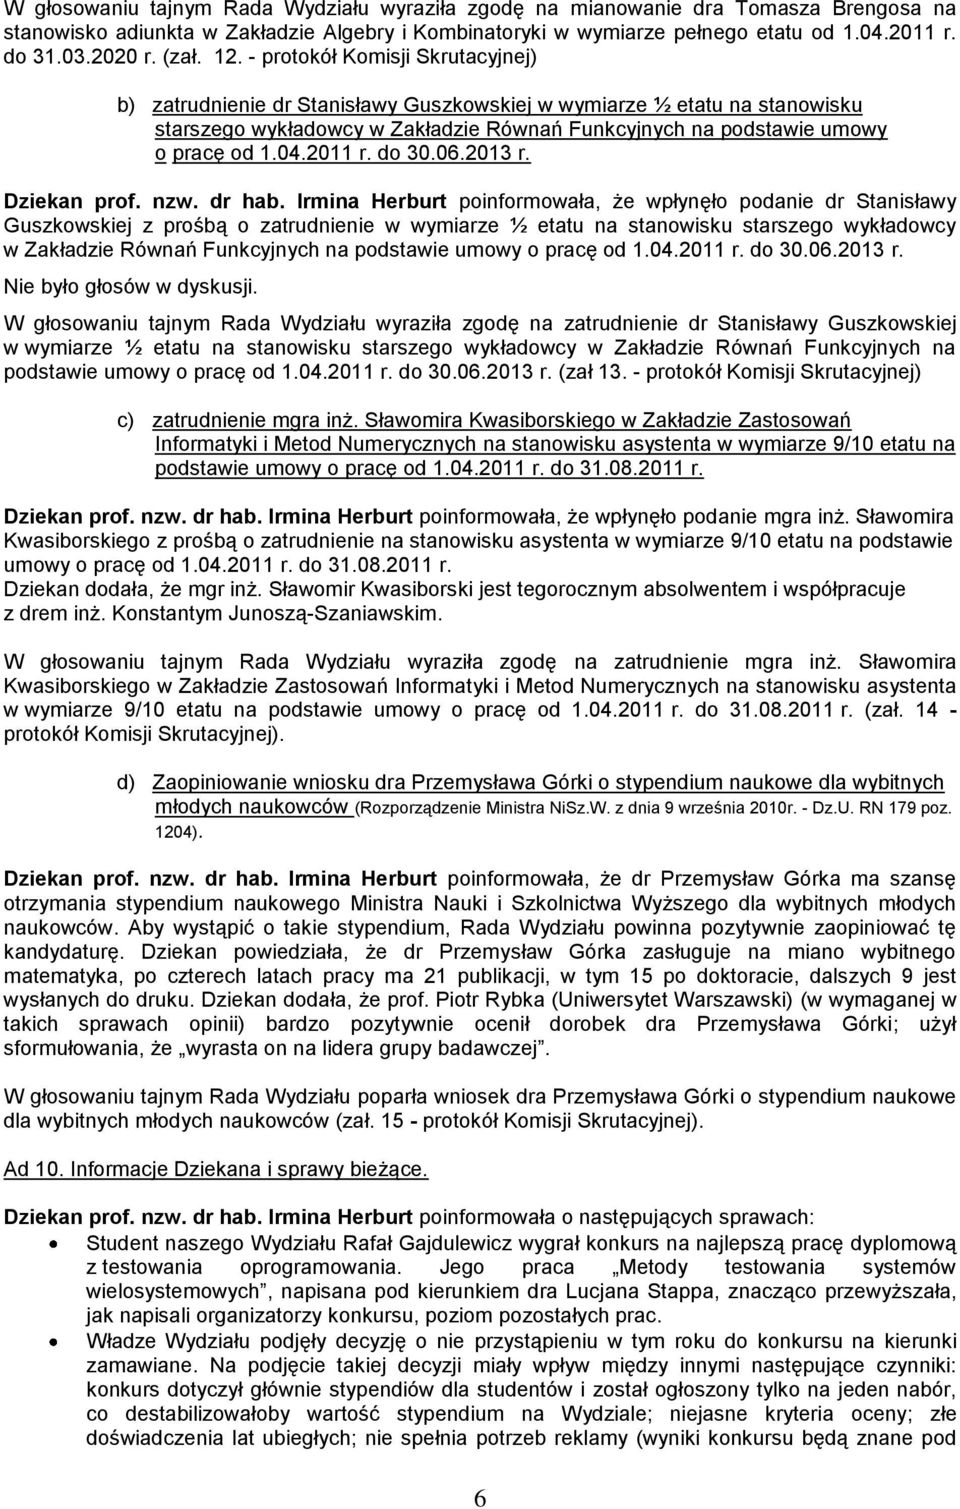 - protokół Komisji Skrutacyjnej) b) zatrudnienie dr Stanisławy Guszkowskiej w wymiarze ½ etatu na stanowisku starszego wykładowcy w Zakładzie Równań Funkcyjnych na podstawie umowy o pracę od 1.04.